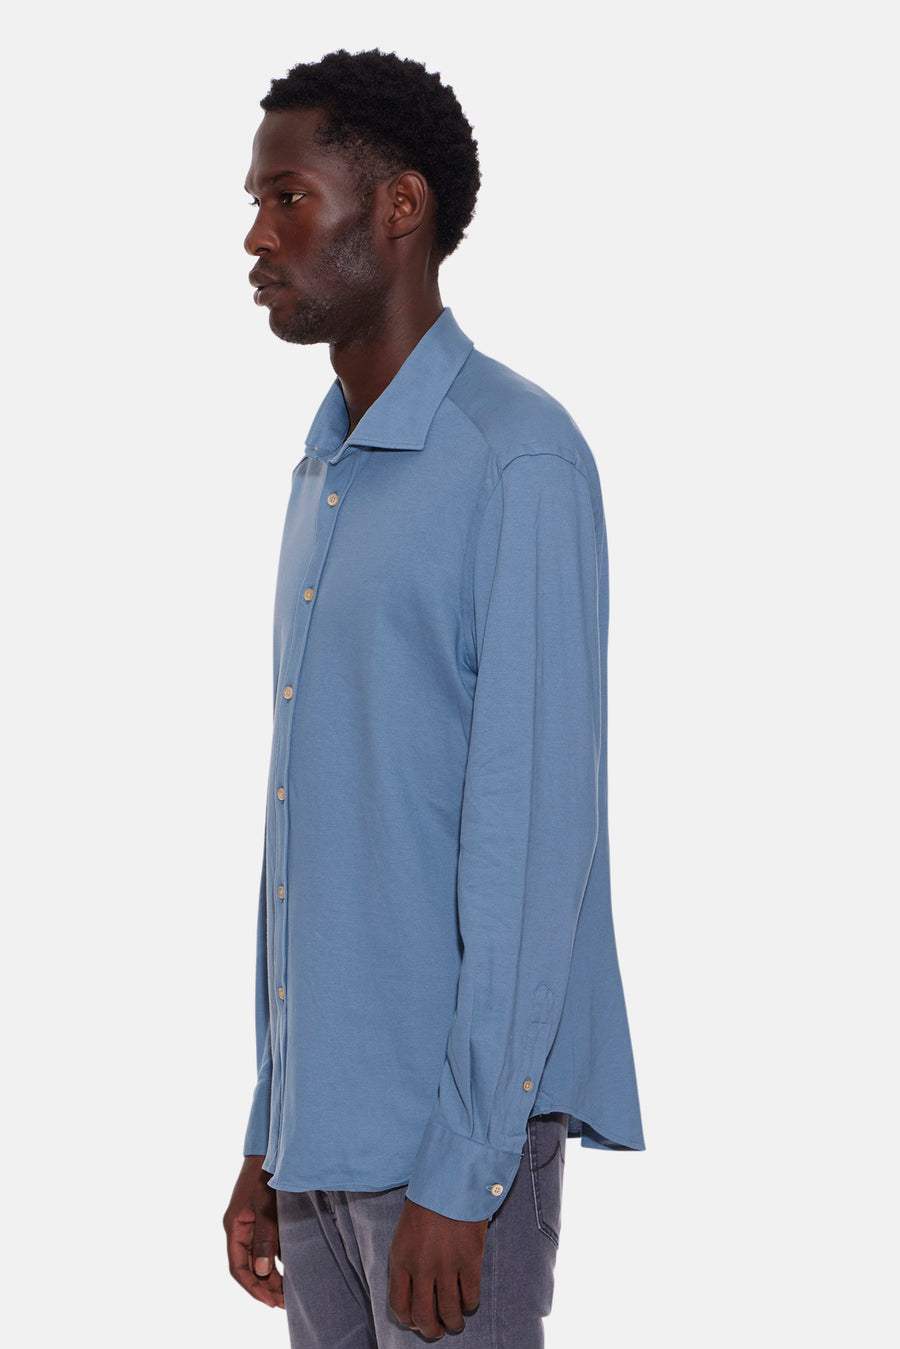 Jersey Cotton Button Up Shirt Blue